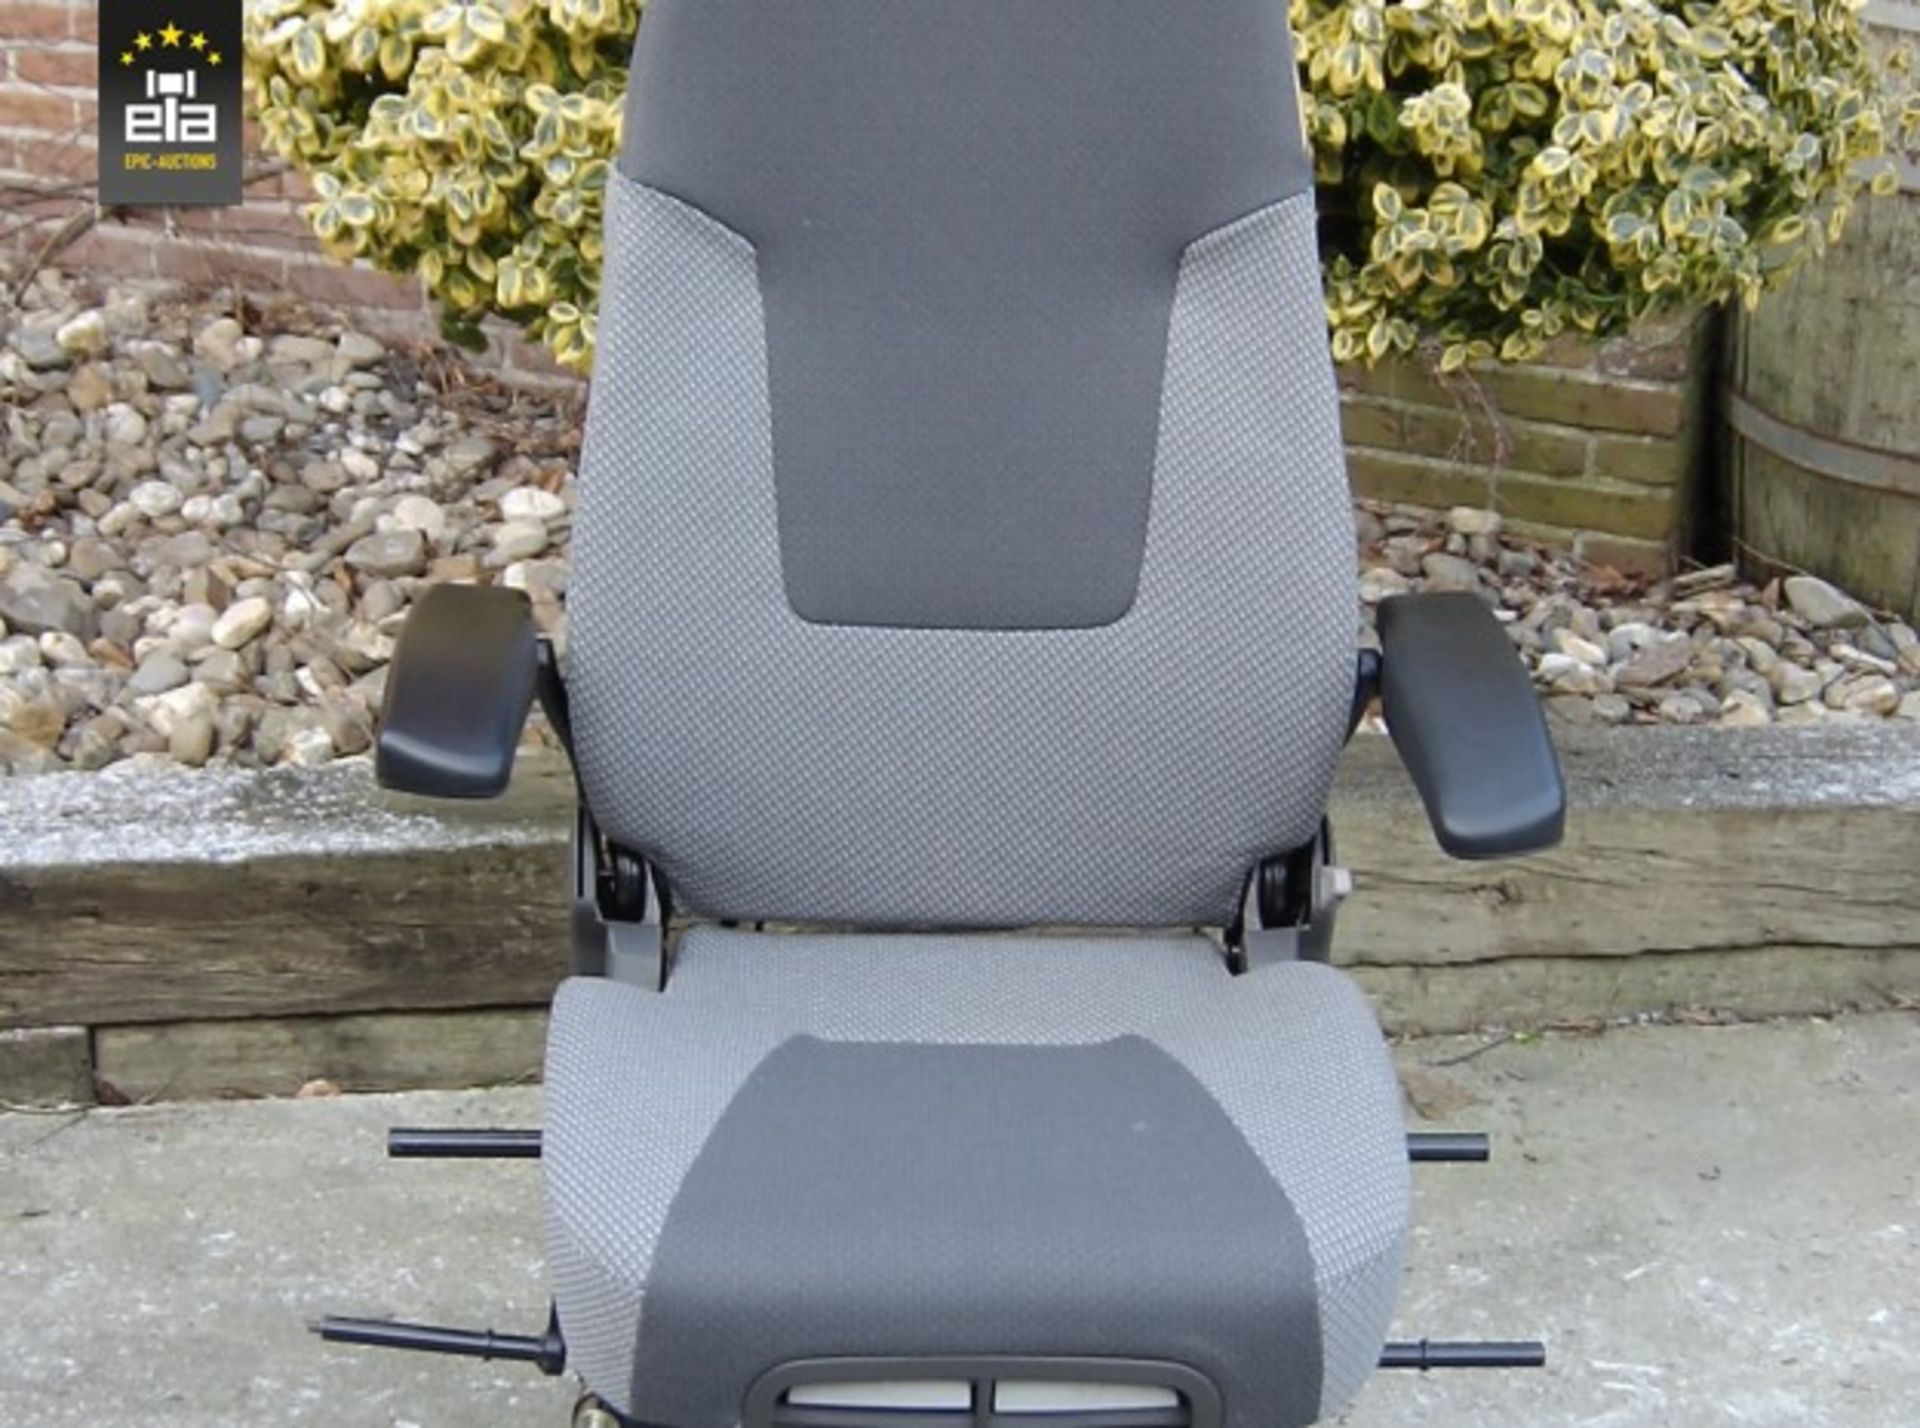 2014 Kab Volvo Luchtgeveerde stoel (1) 20140532